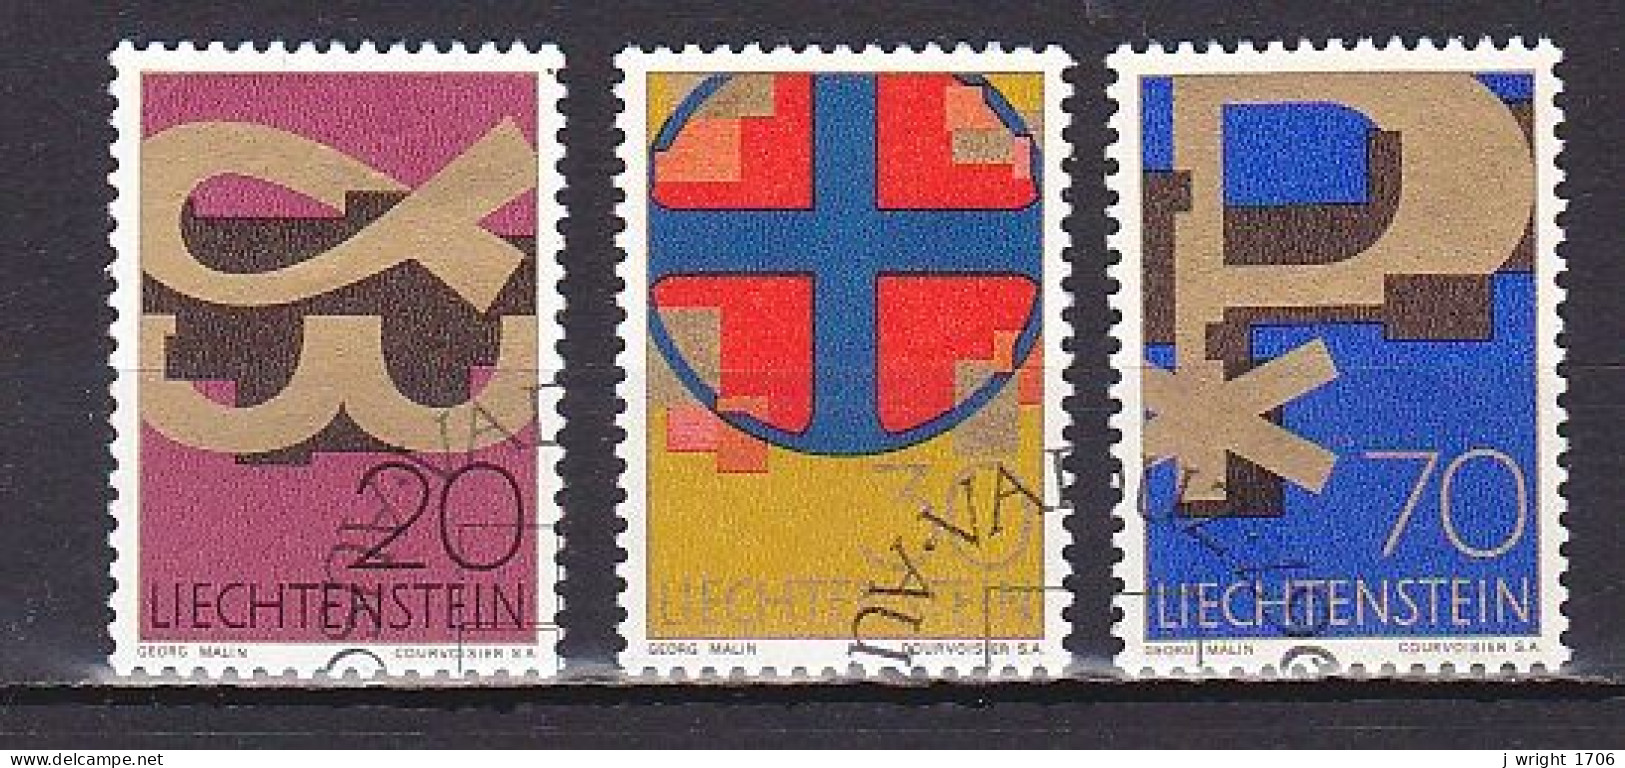 Liechtenstein, 1967, Christian Symbols, Set, CTO - Usati